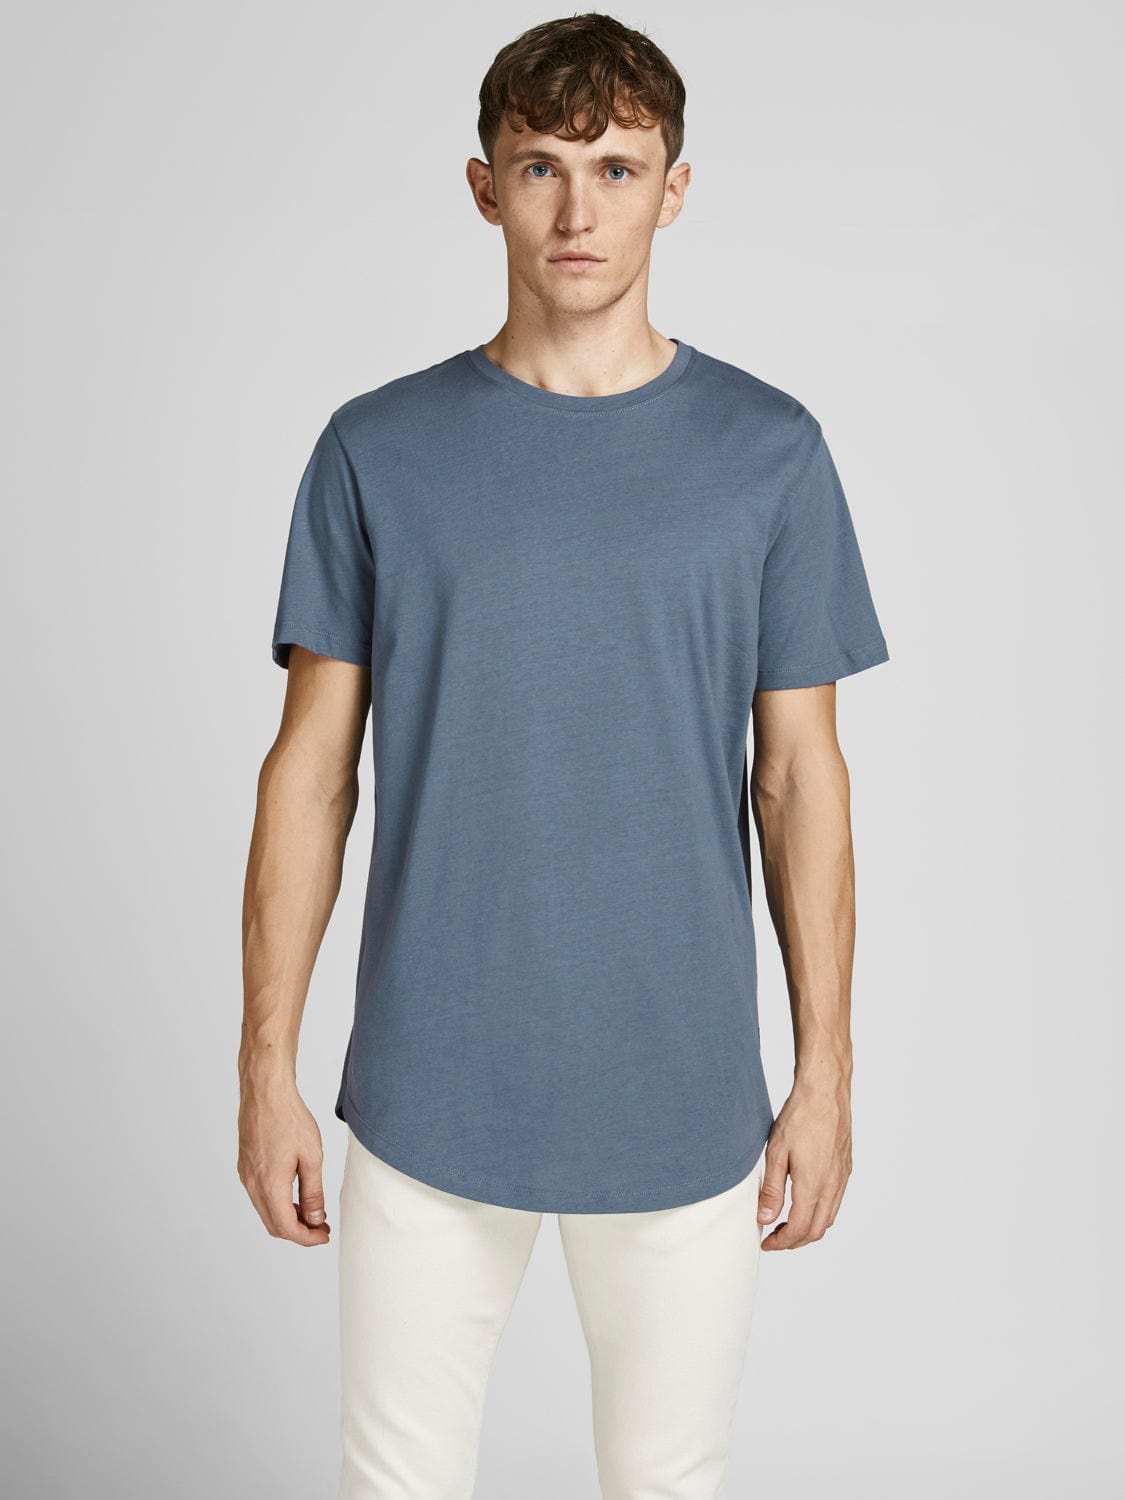 Camiseta Noa - Azul